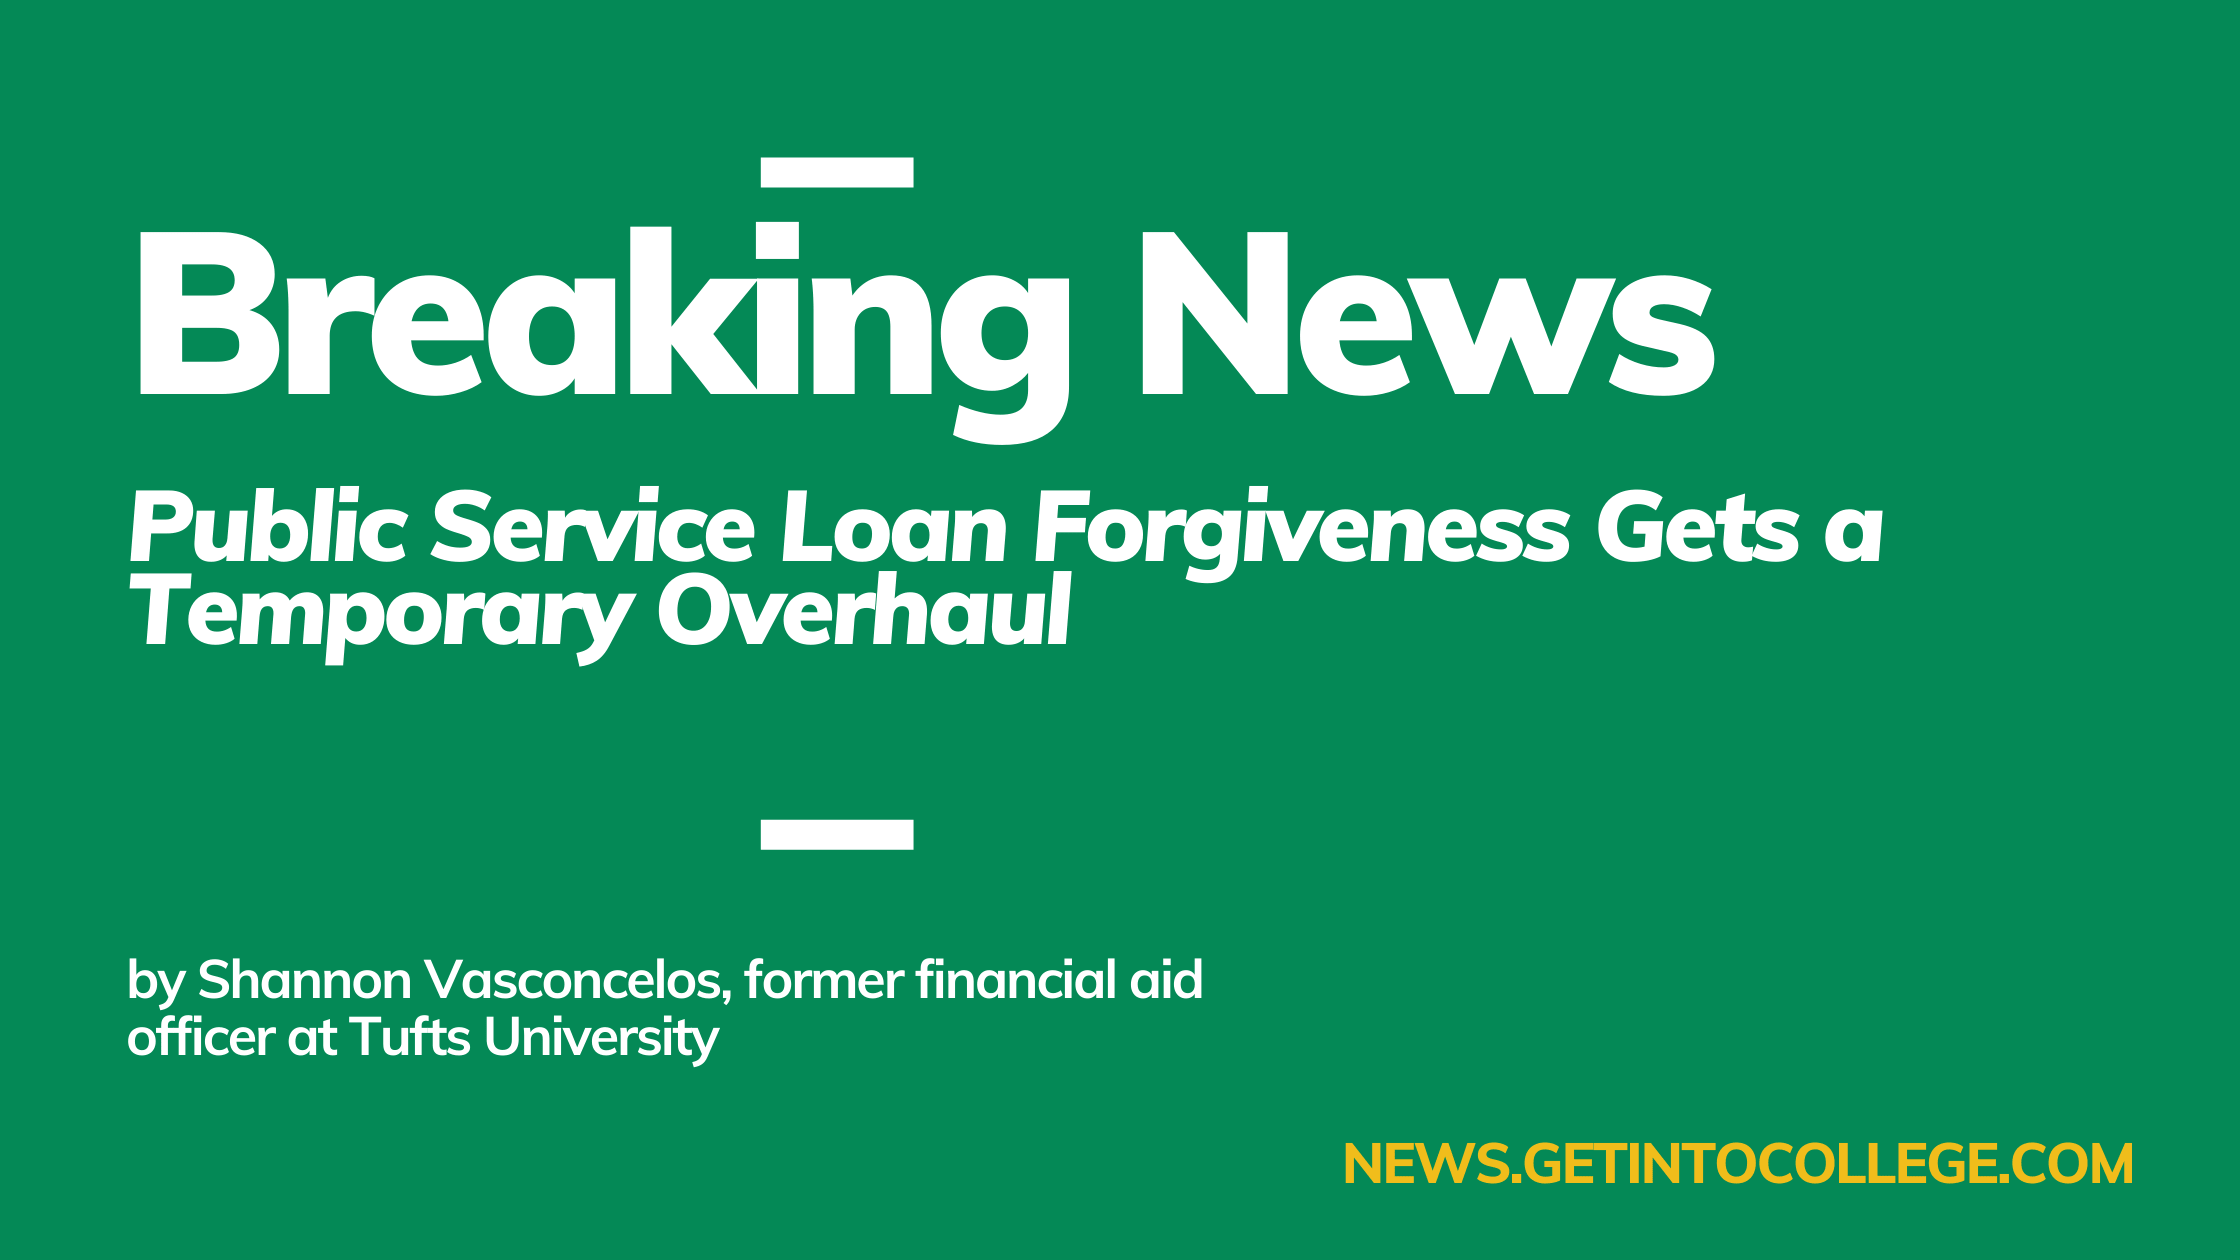 Public Service Loan Forgiveness Breaking News Post